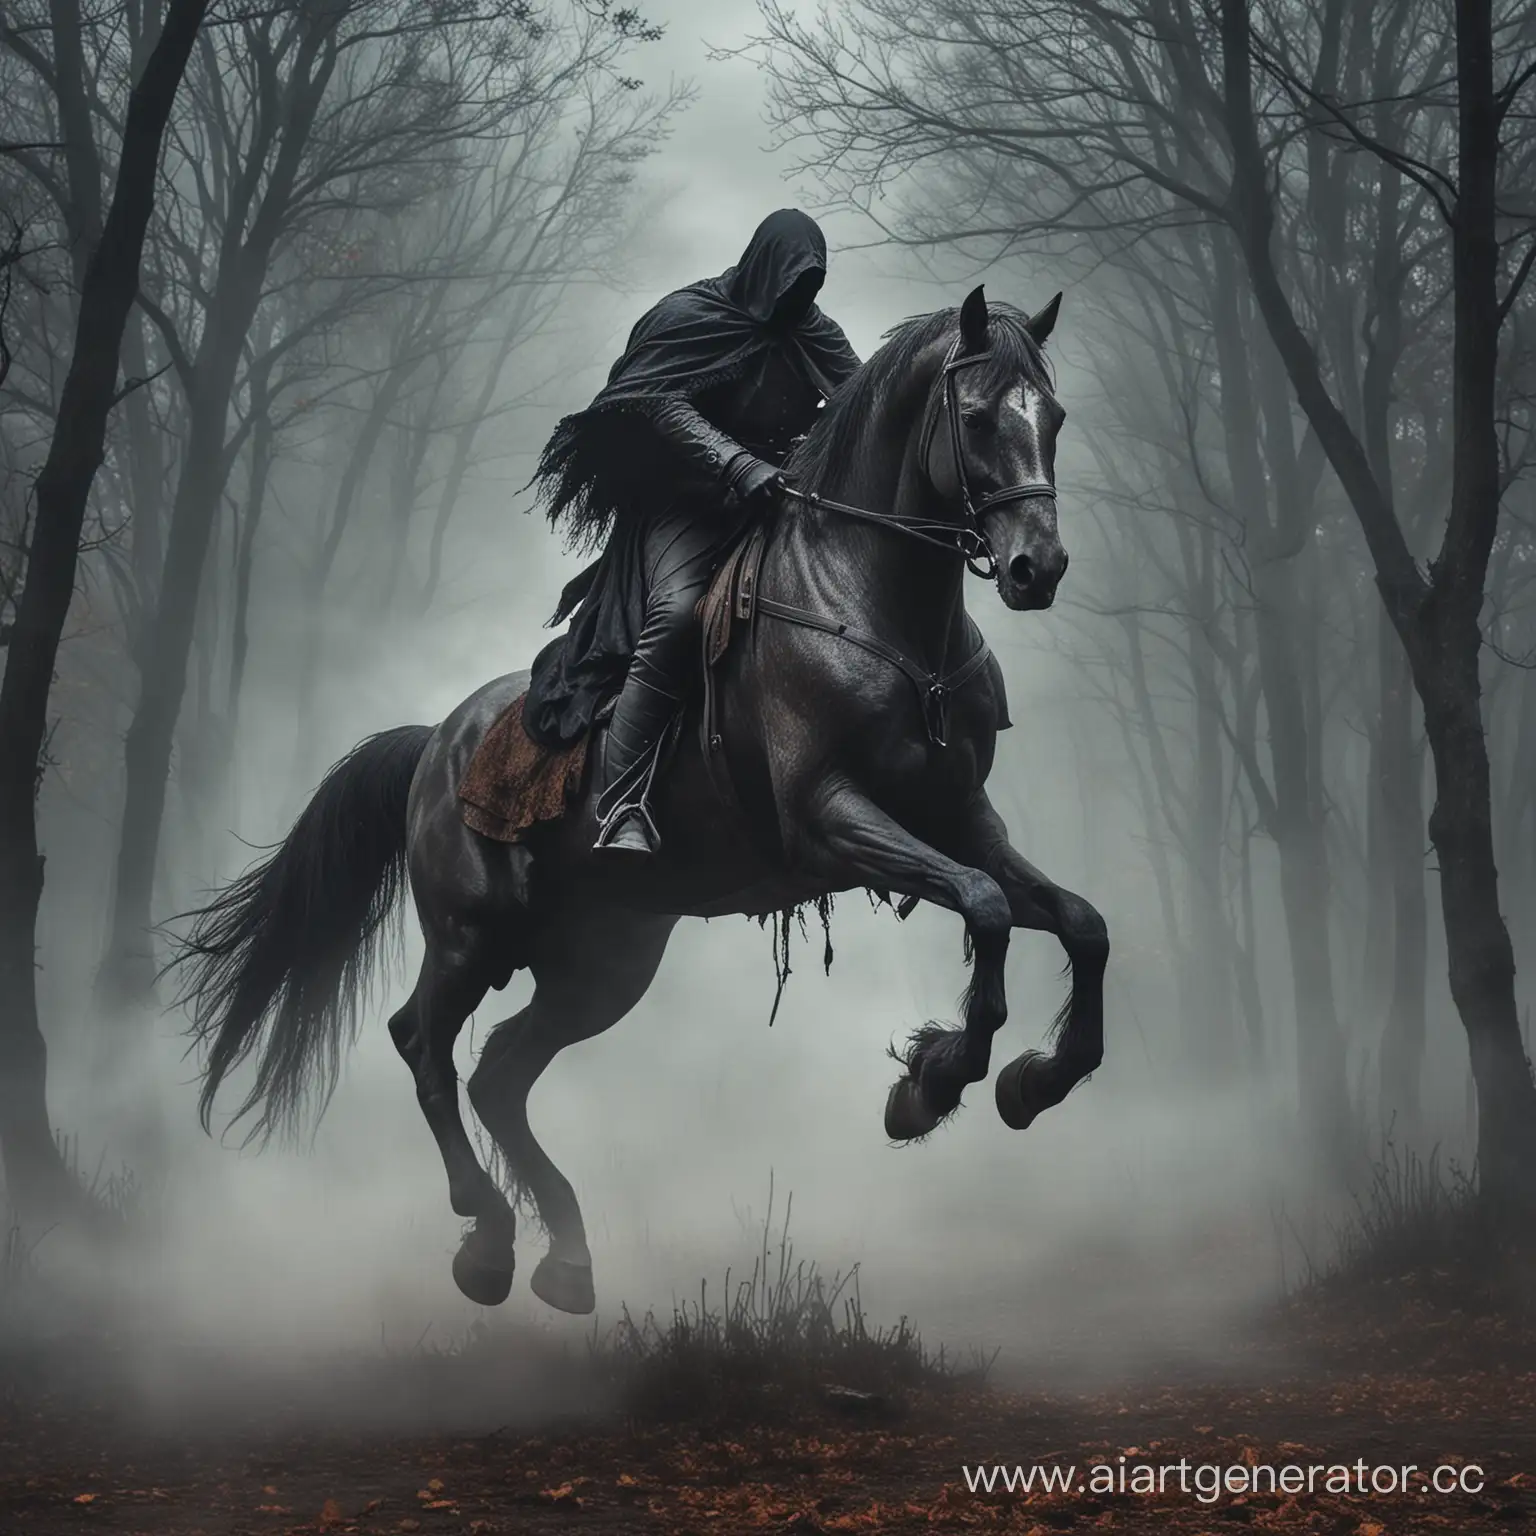 Eerie-Headless-Horseman-Riding-Ghostly-Steed-in-Moonlit-Night